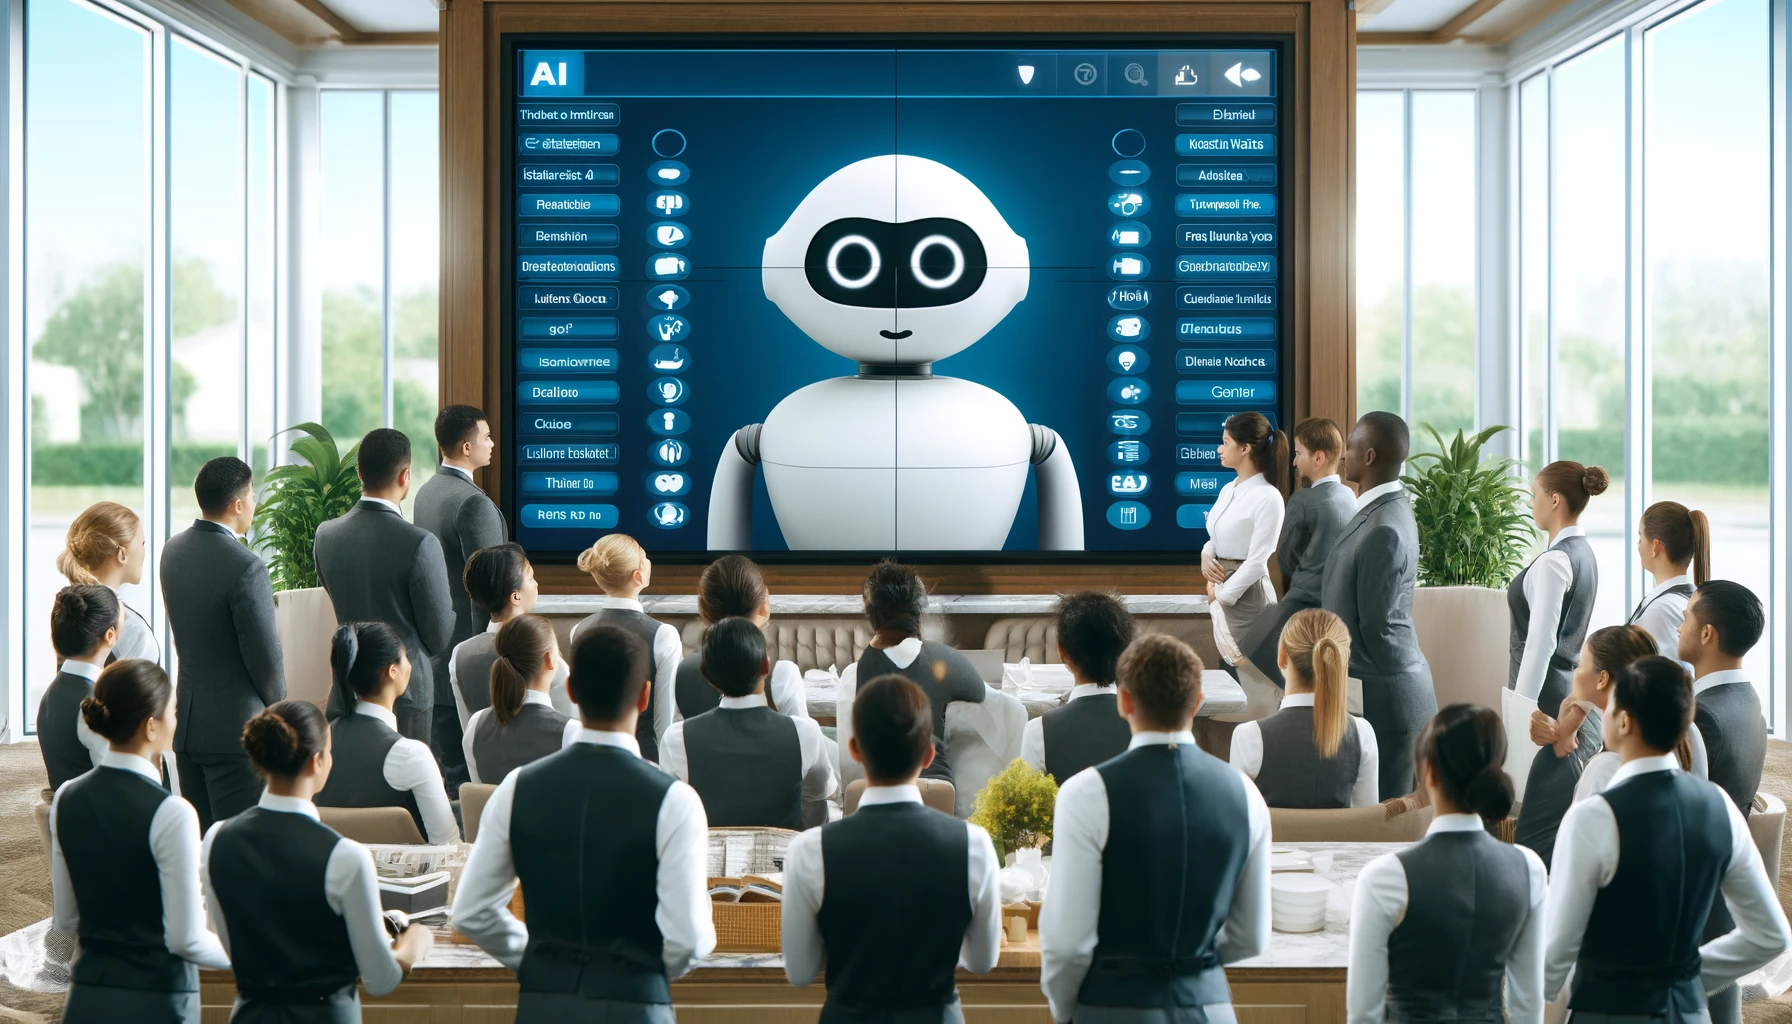 Effectieve implementatie van AI-chatbots in hotels vereist afstemming op merkwaarden en uitgebreide personeelstraining om de gasttevredenheid te vergroten